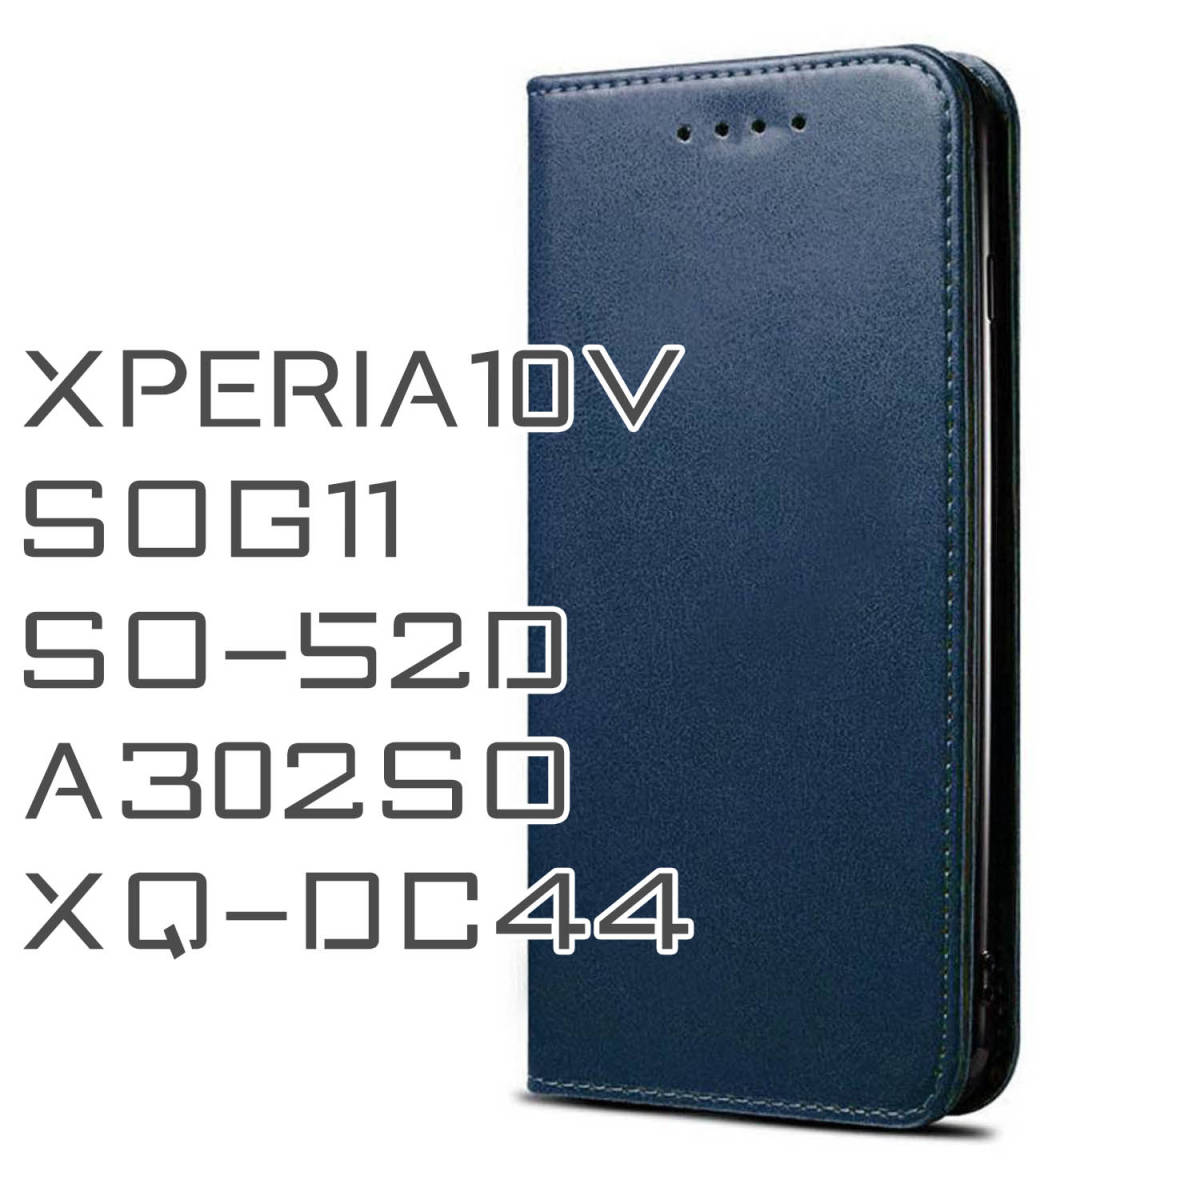 Xperia10V ケース 手帳型 おしゃれ ネイビー 紺 青 SOG11 カバー SO52D スマホケース A302SO XQDC44 ポケット スタンド機能 送料無料 安い_画像1